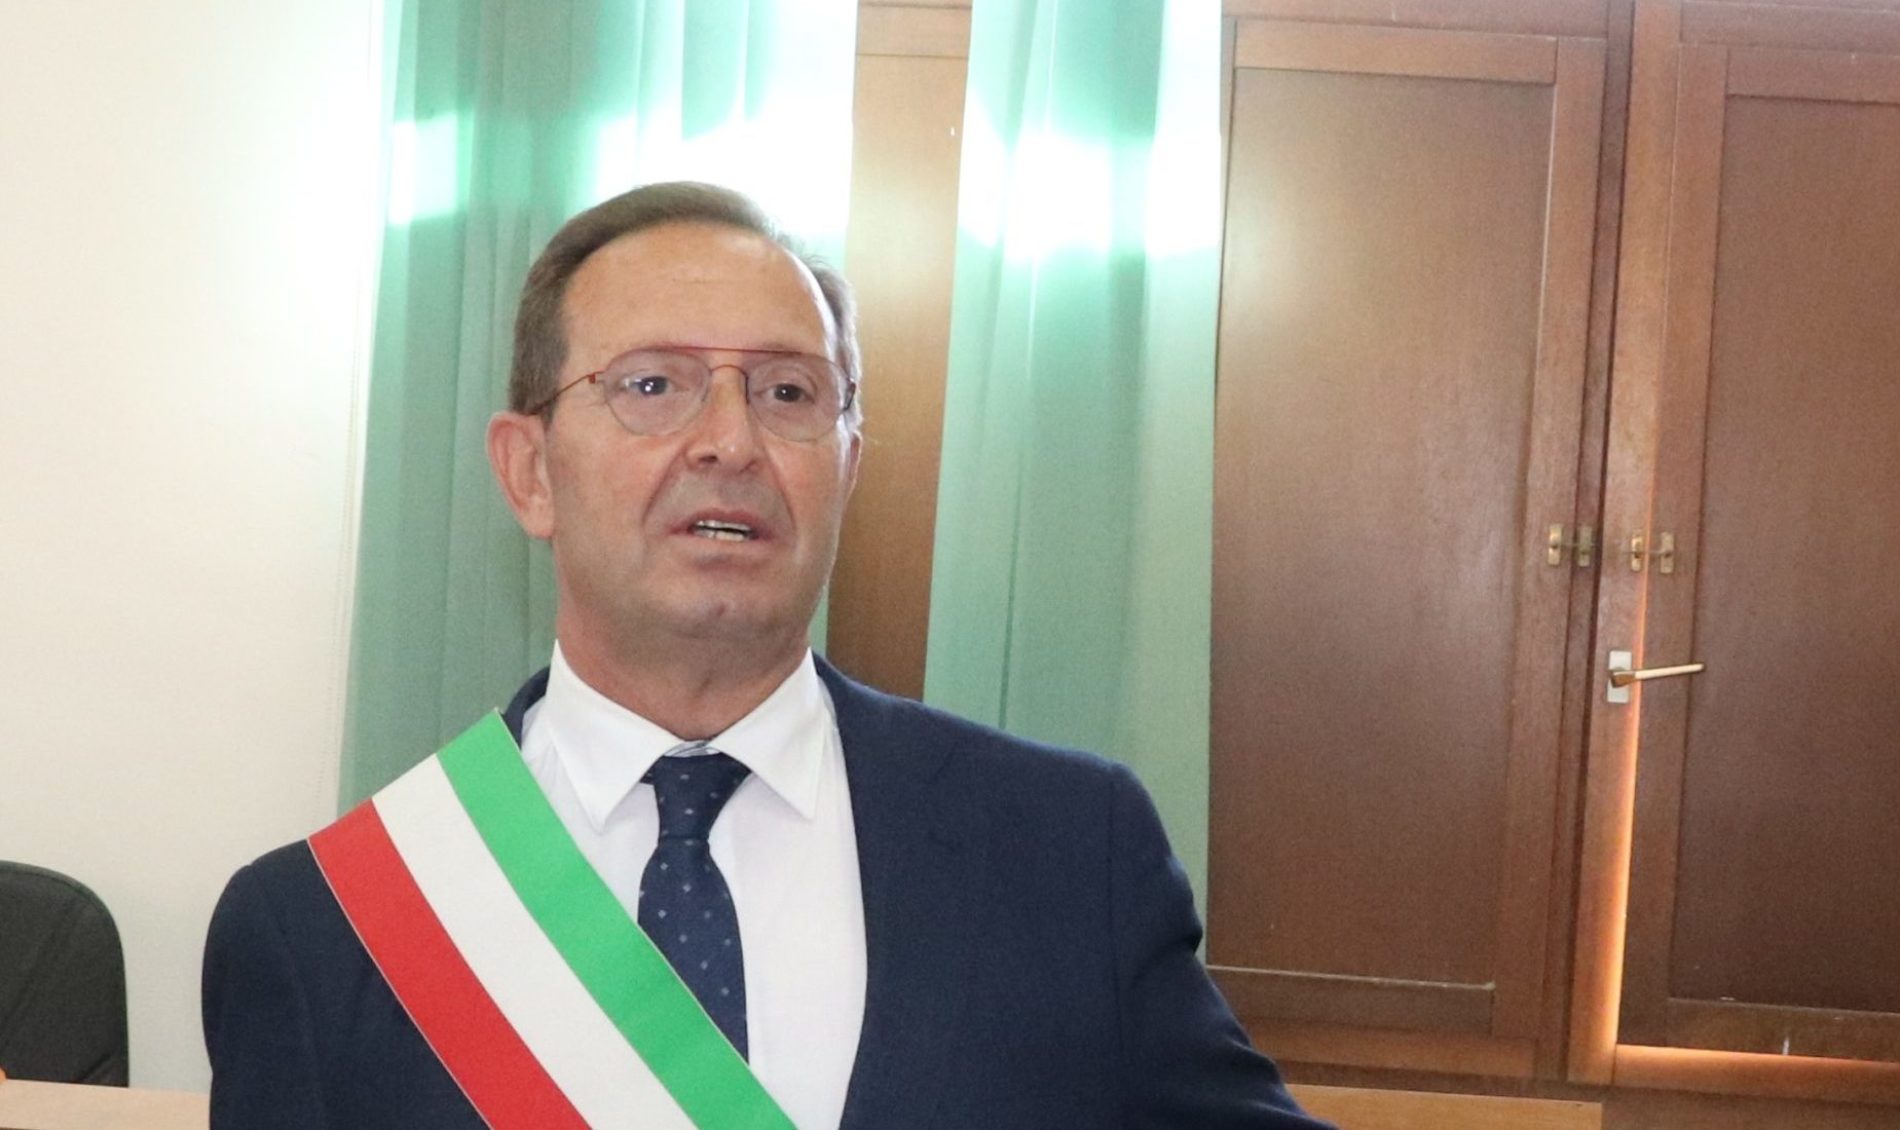 PIETRAPERZIA. Il sindaco di Pietraperzia Salvuccio Messina  nuovo vicepresidente della SRR, Società Regionale Rifiuti.